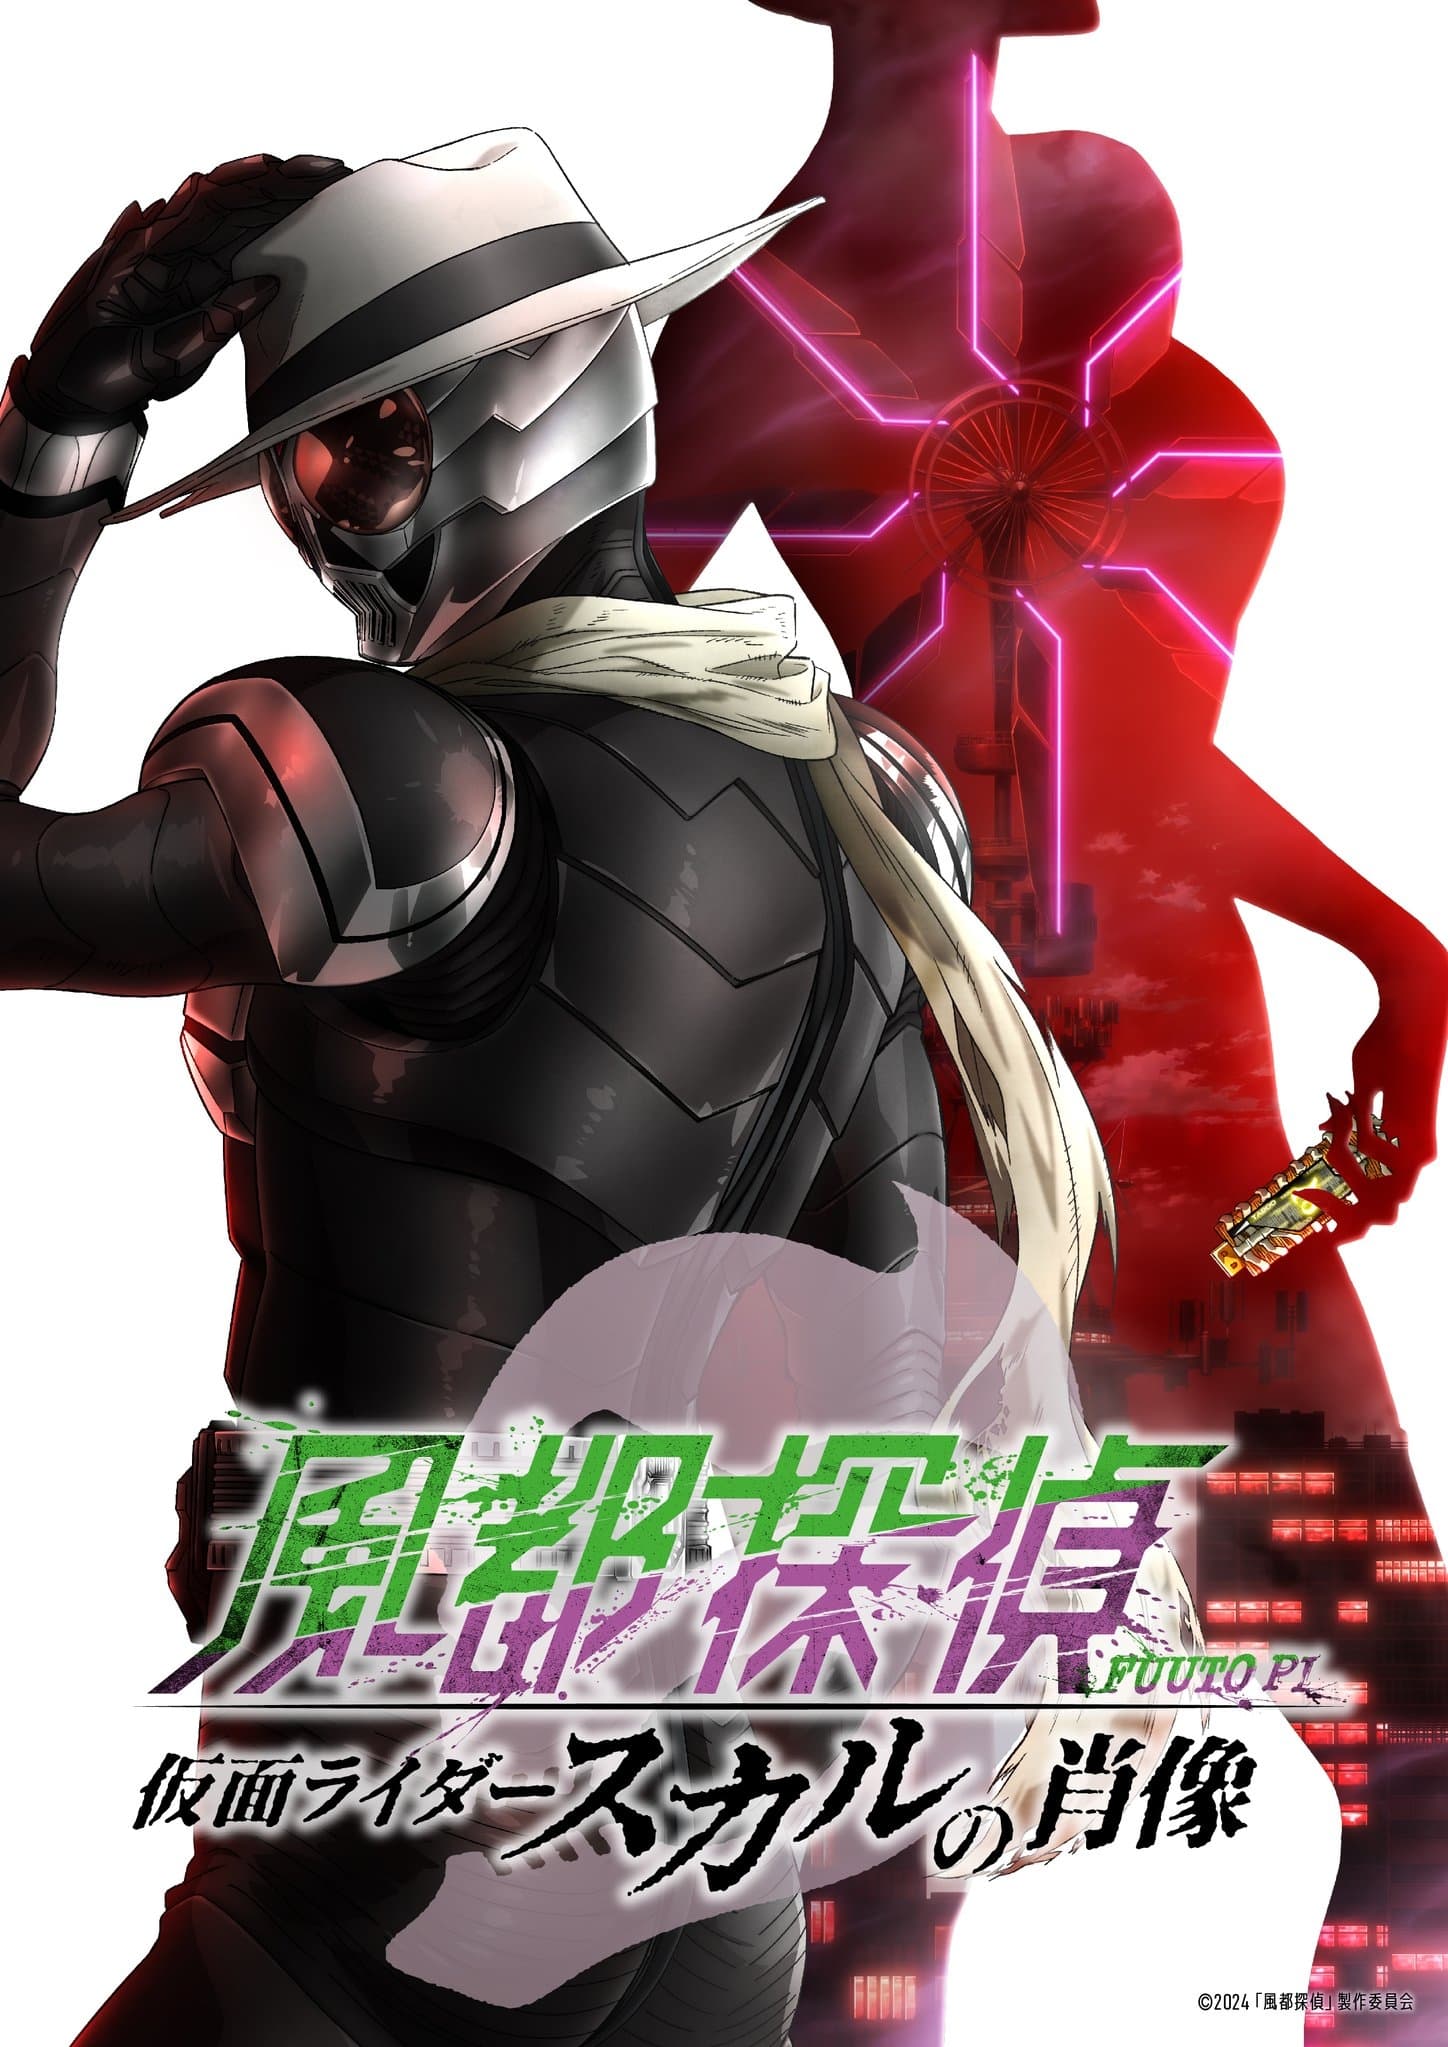 Fuuto PI: Portrait of Kamen Rider Skull